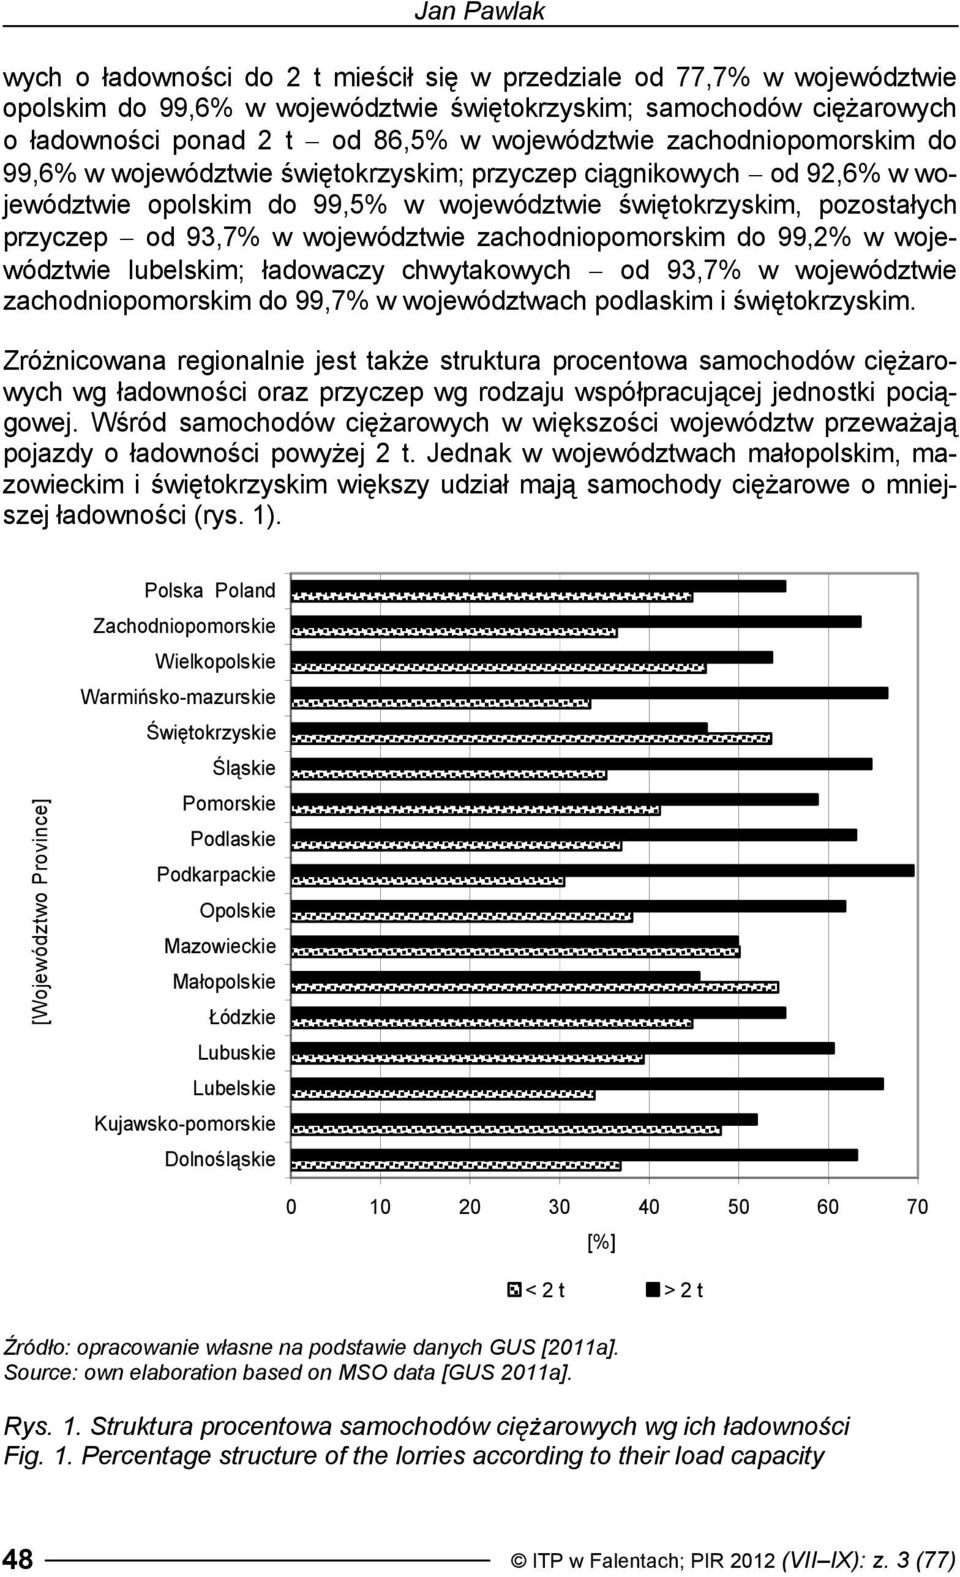 województwie zachodniopomorskim do 99,2% w województwie lubelskim; ładowaczy chwytakowych od 93,7% w województwie zachodniopomorskim do 99,7% w województwach podlaskim i świętokrzyskim.